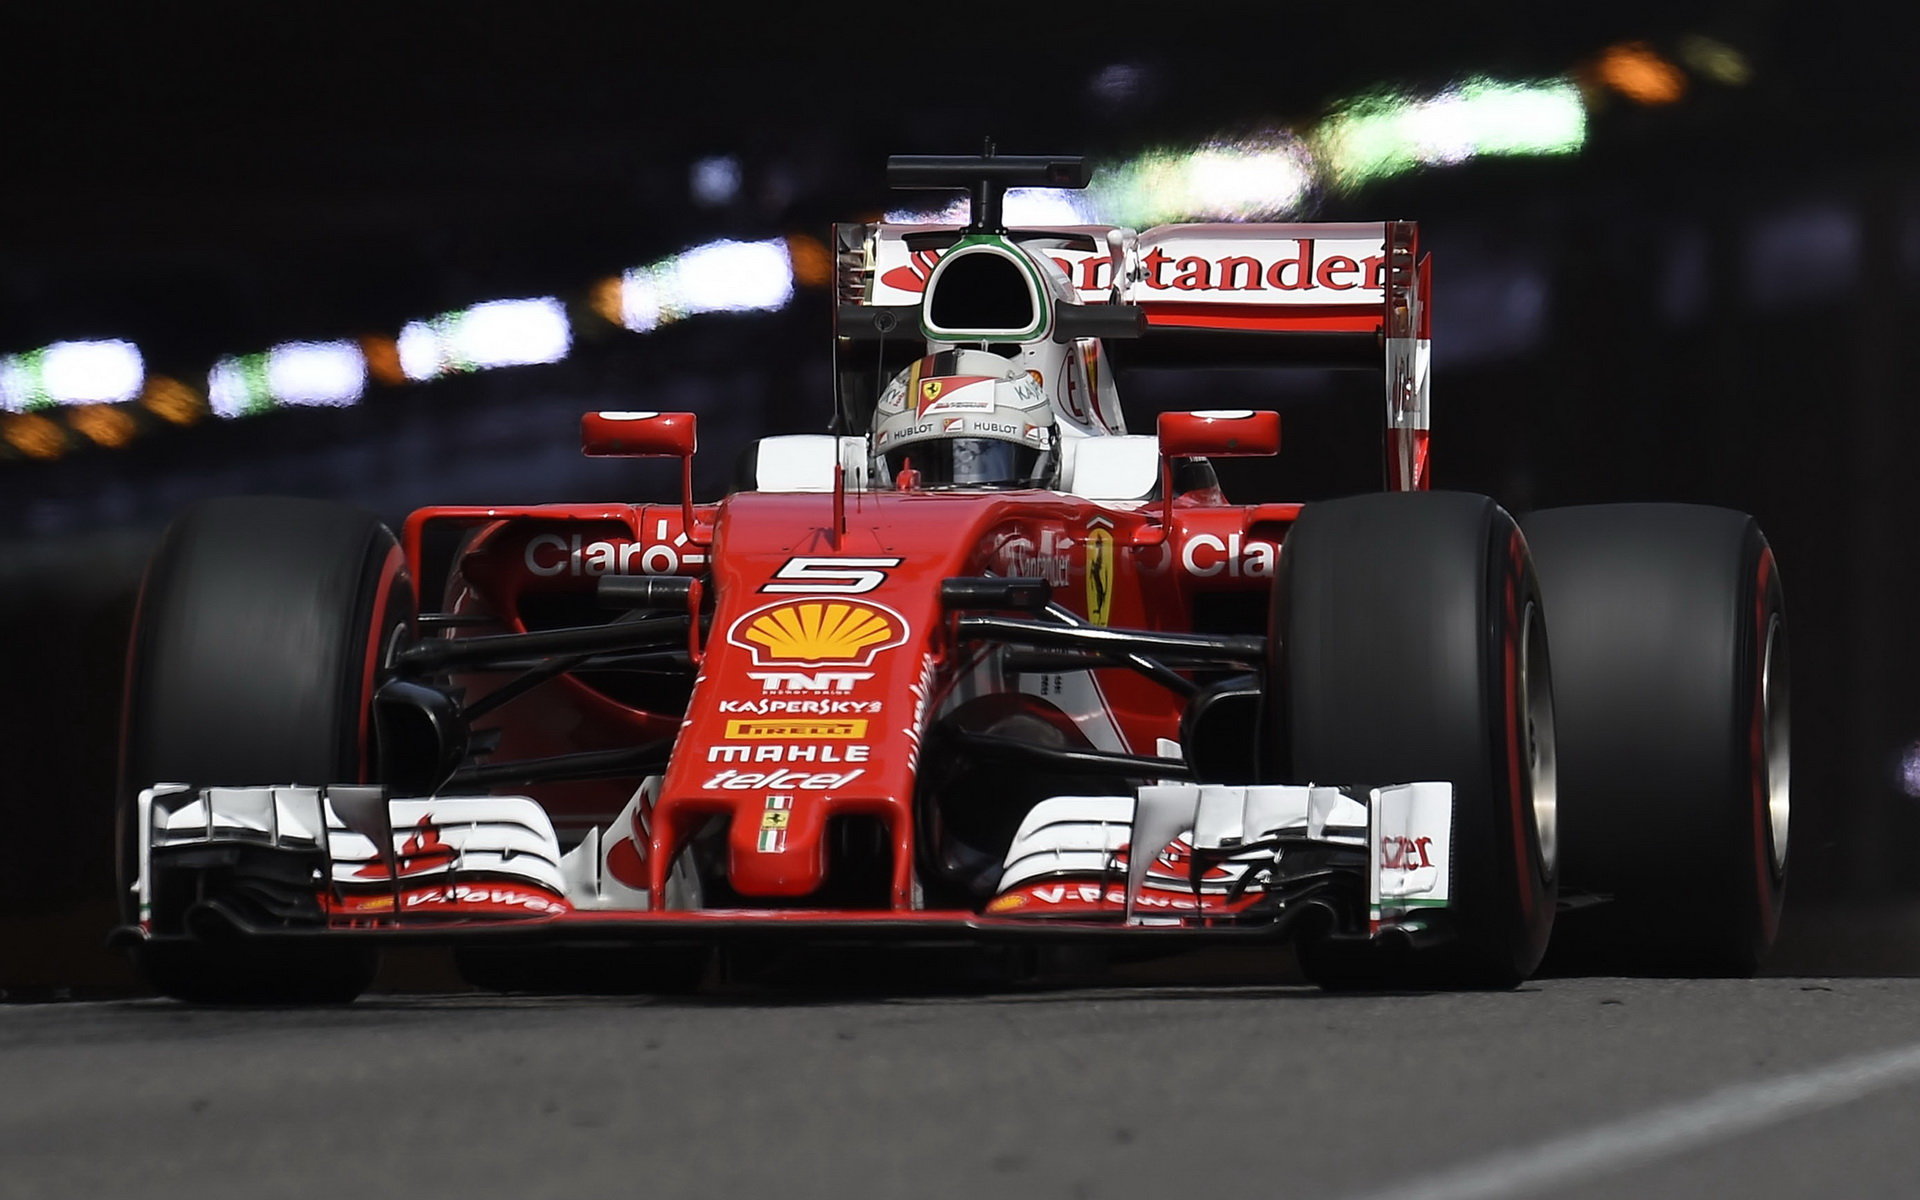 Piloti Ferrari podali v tréninku hodně rozdílné výkony